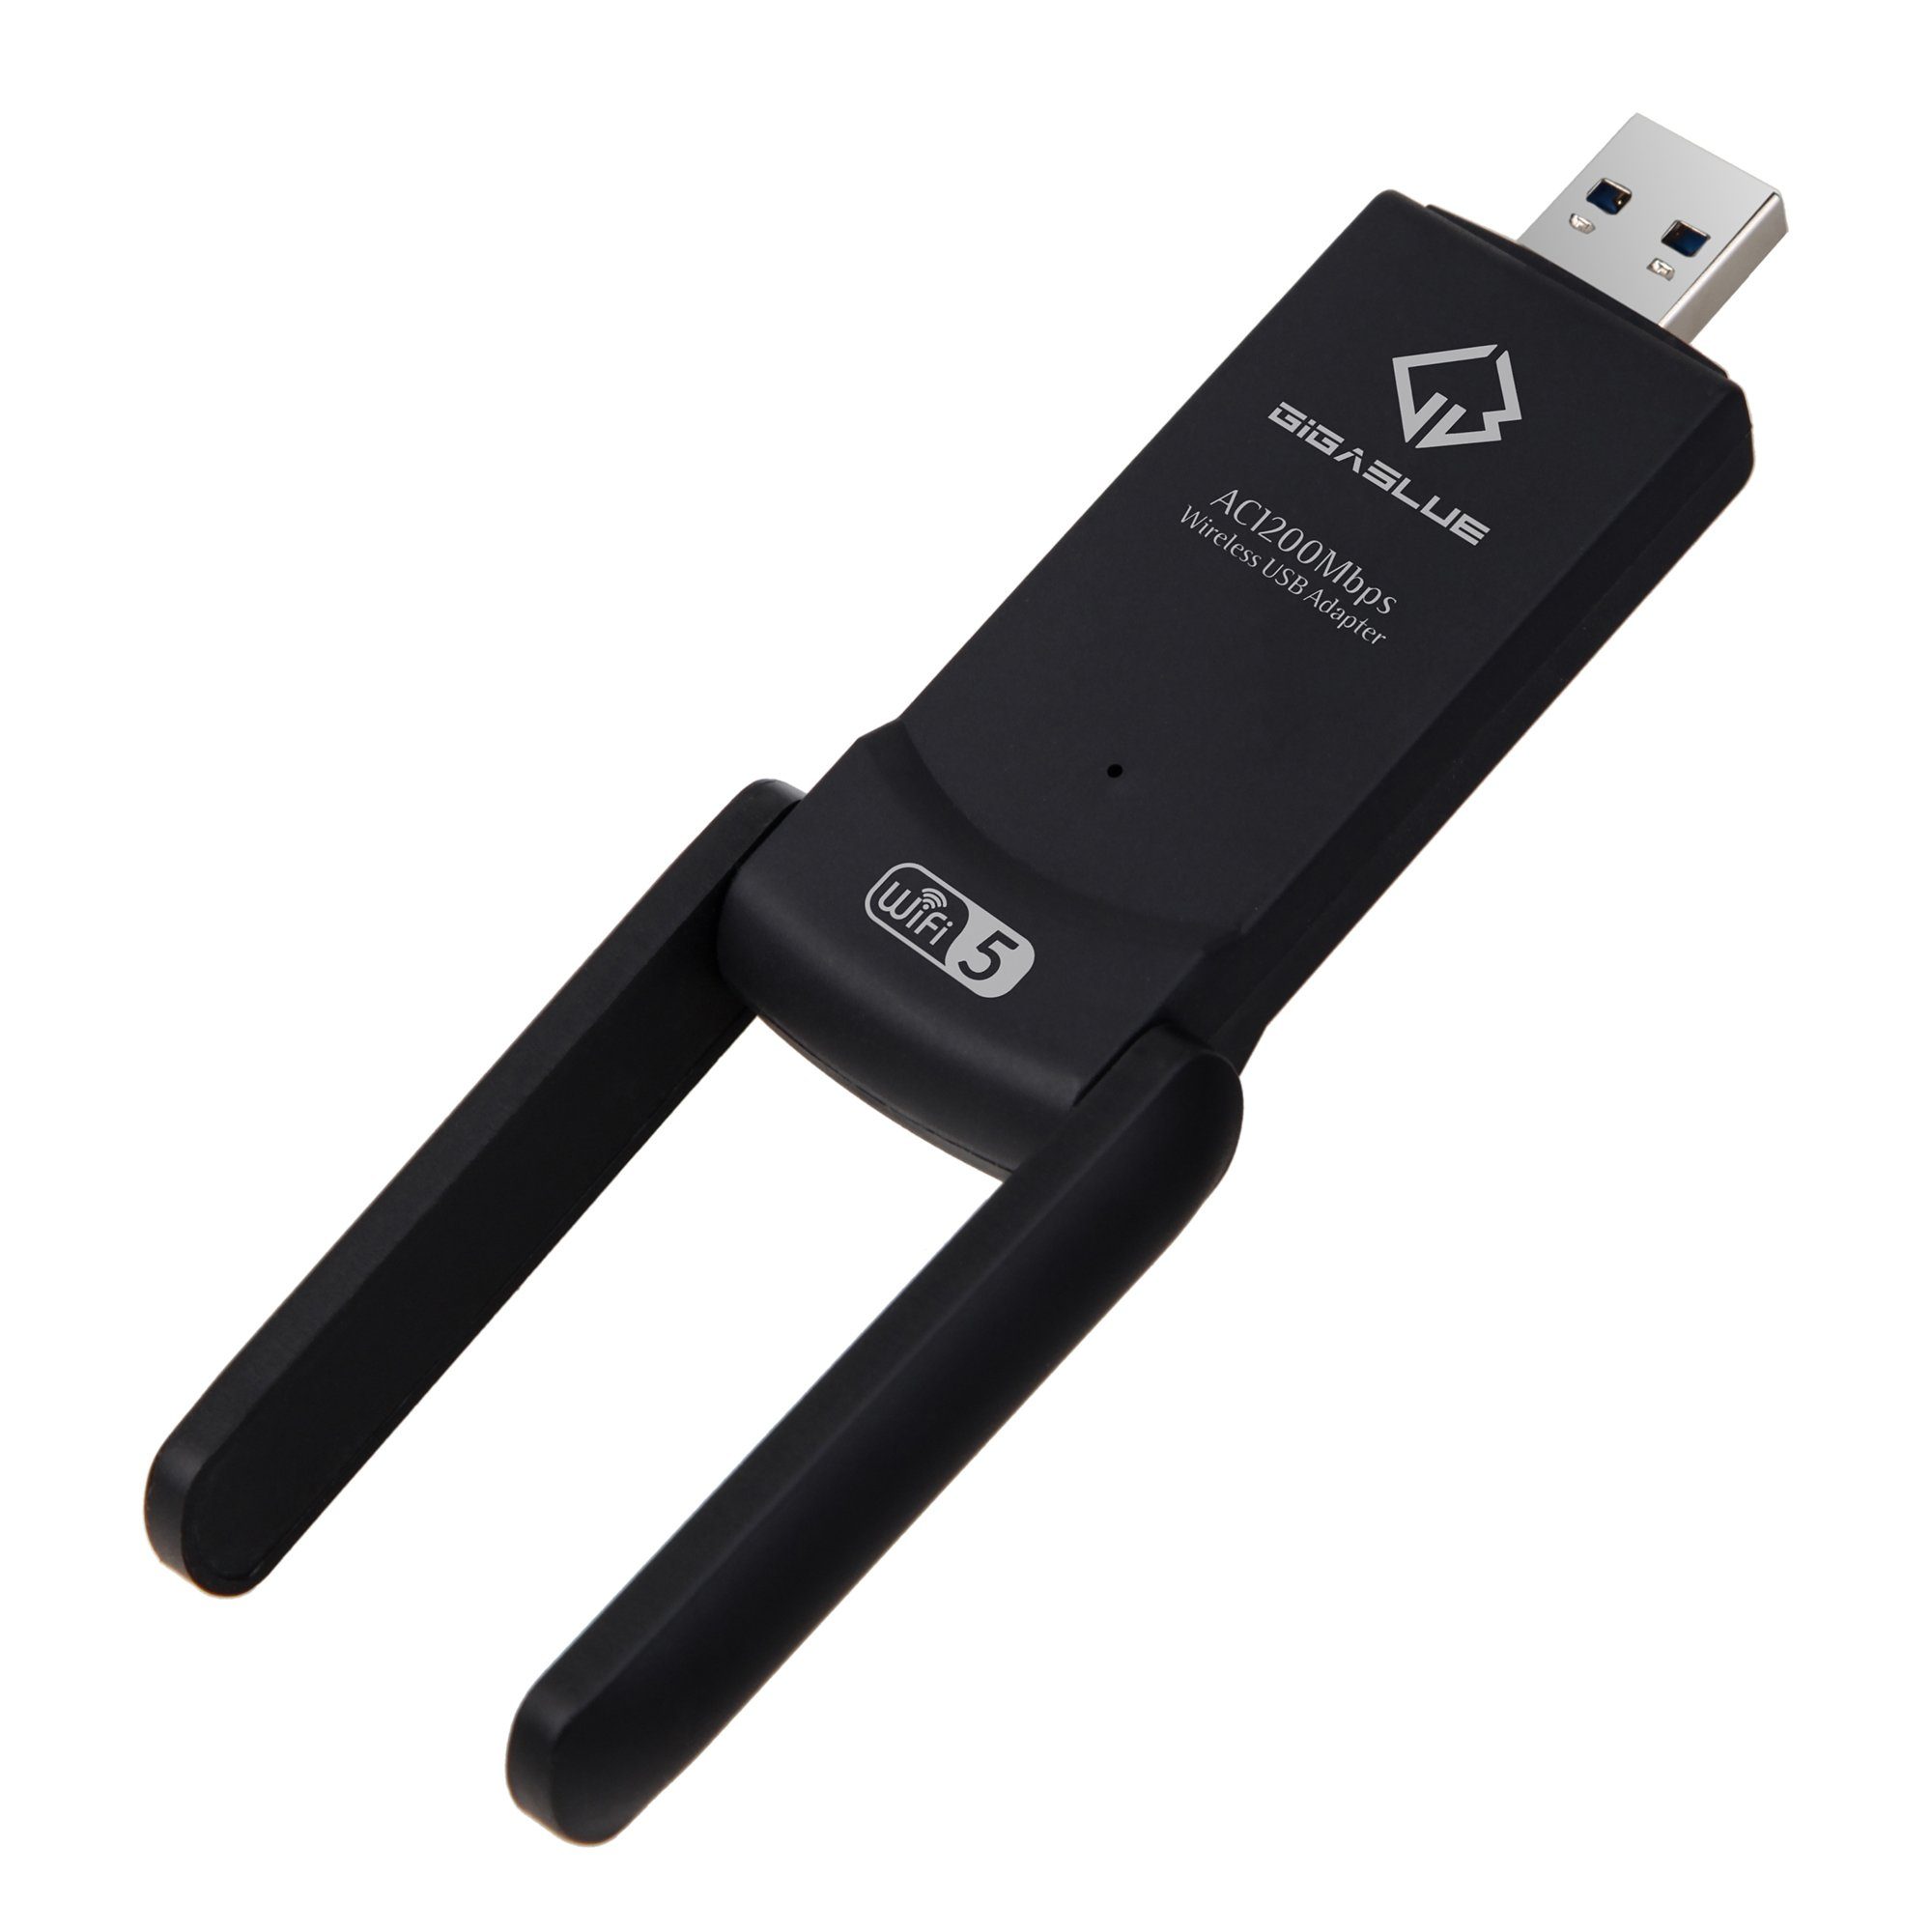 GigaBlue adapter 1200Mbps Kabel-Receiver USB Gigablue WiFi 3.0